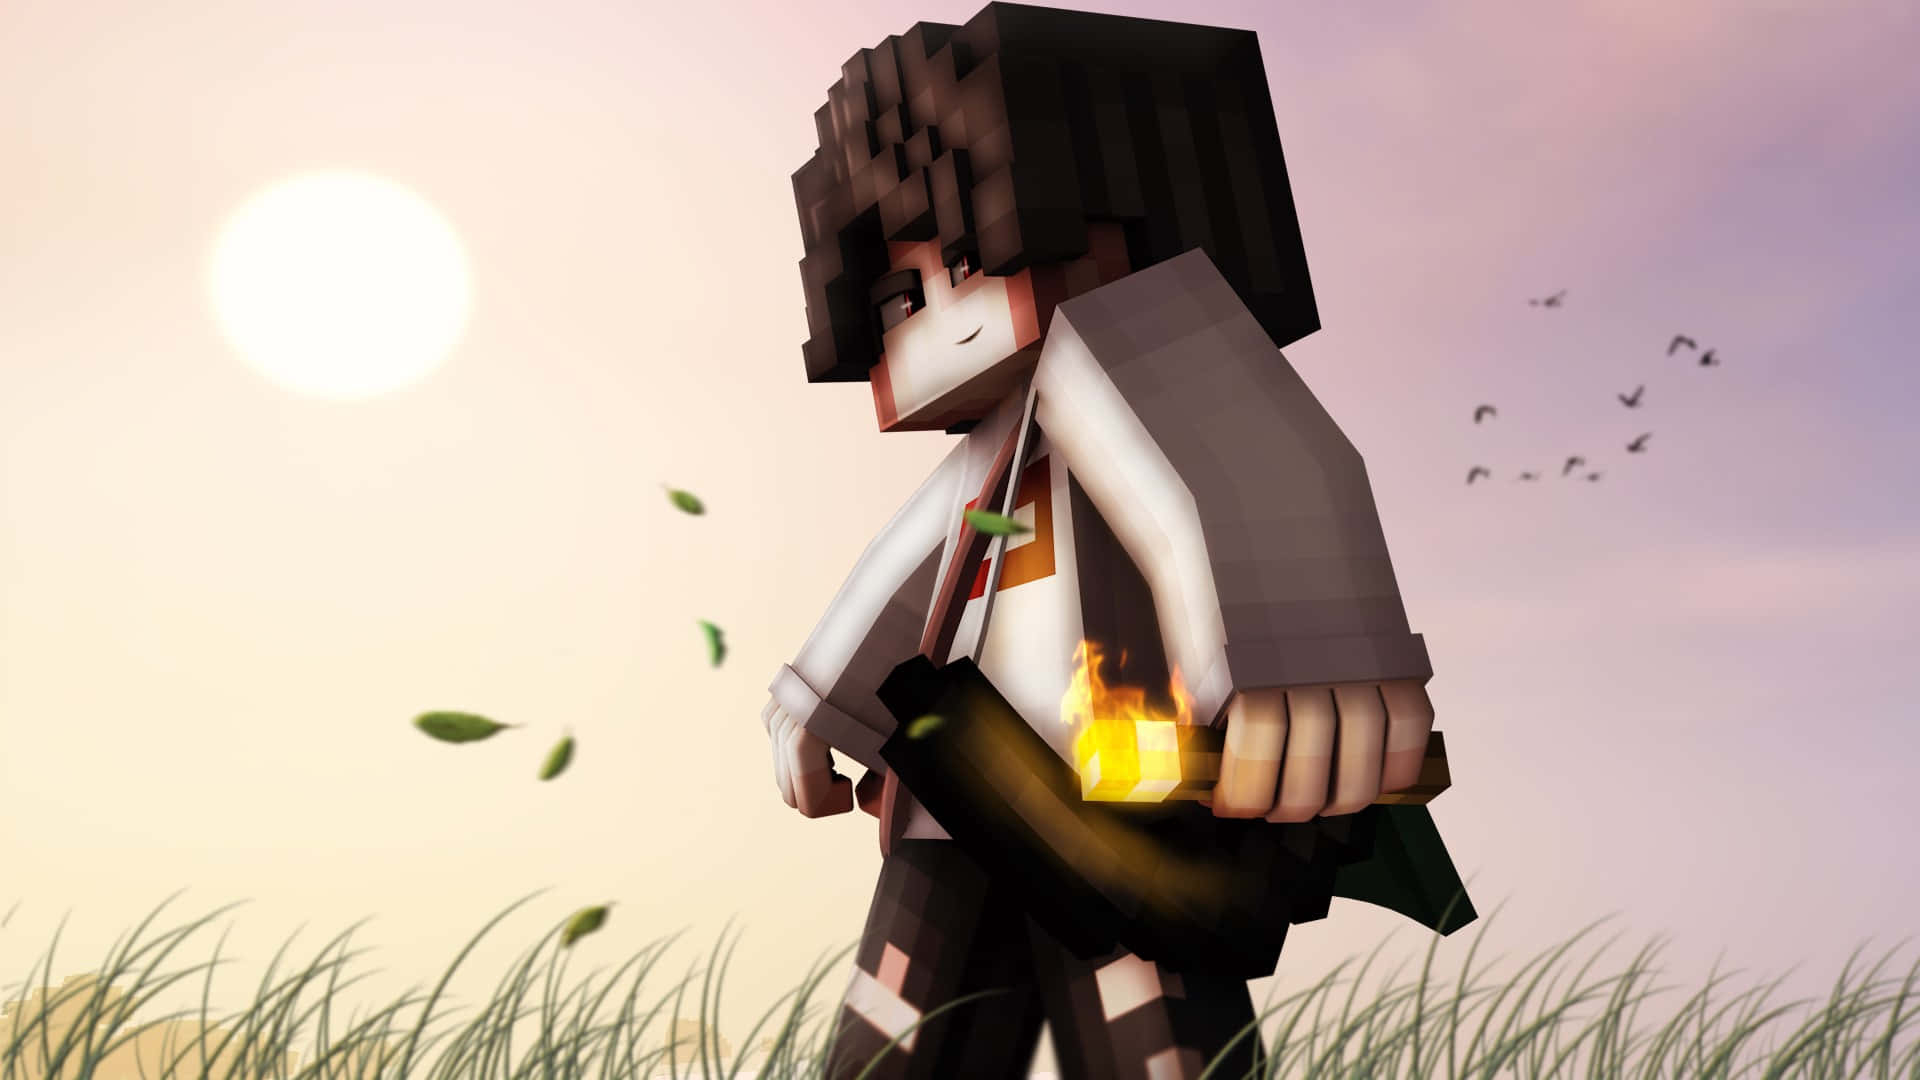 Animated Sunset Warrior.jpg Background